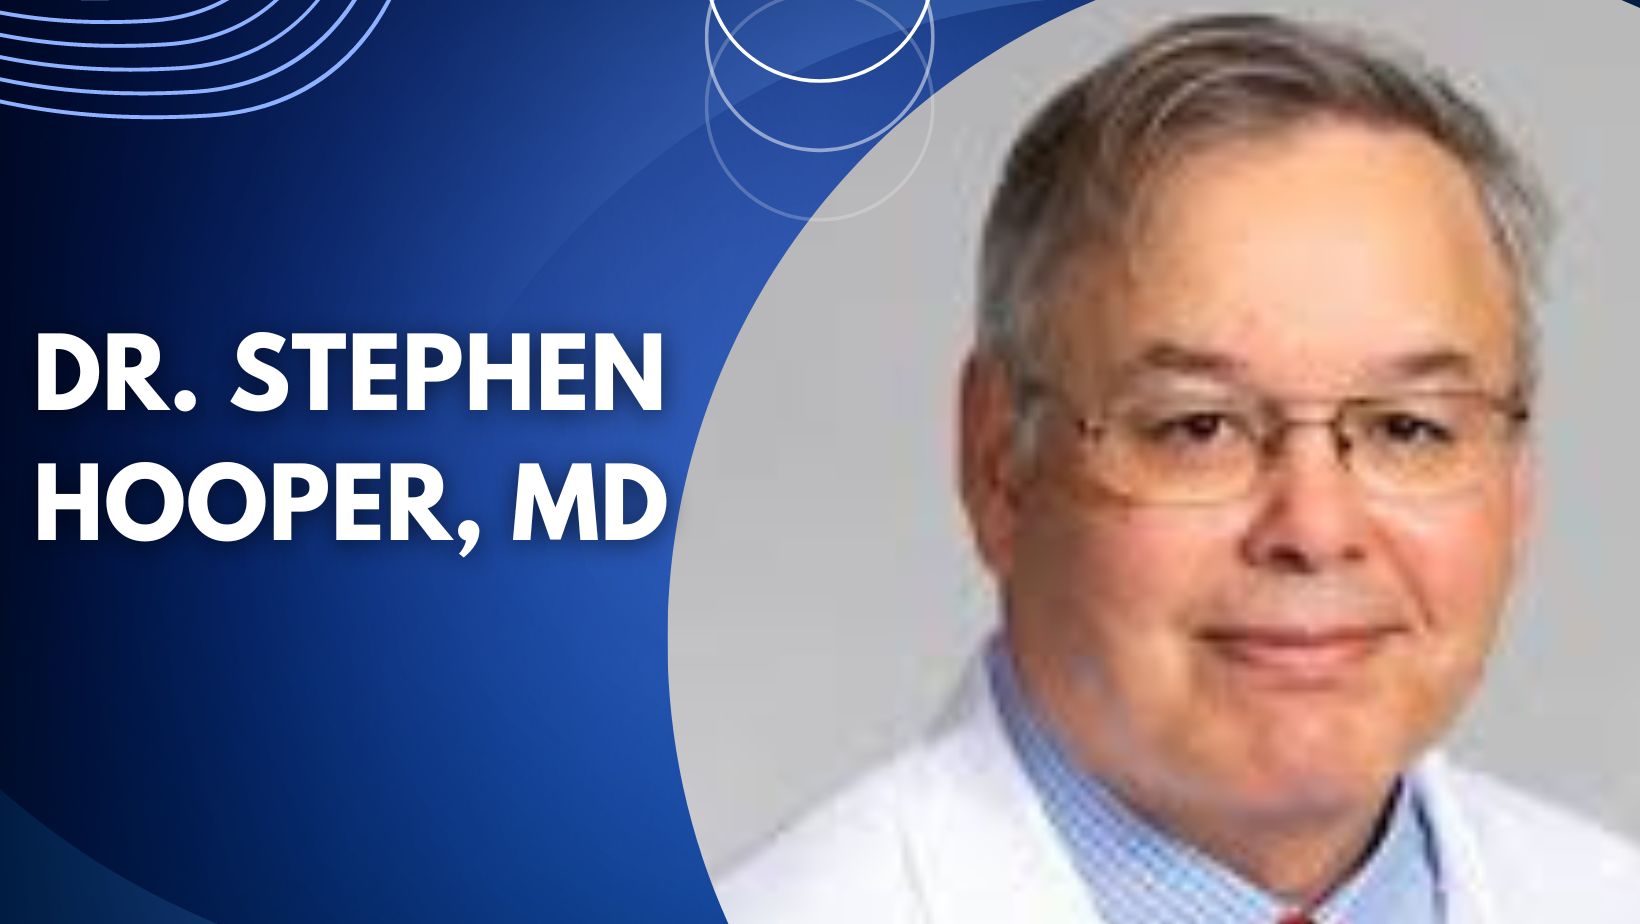 Dr. Stephen Hooper, MD